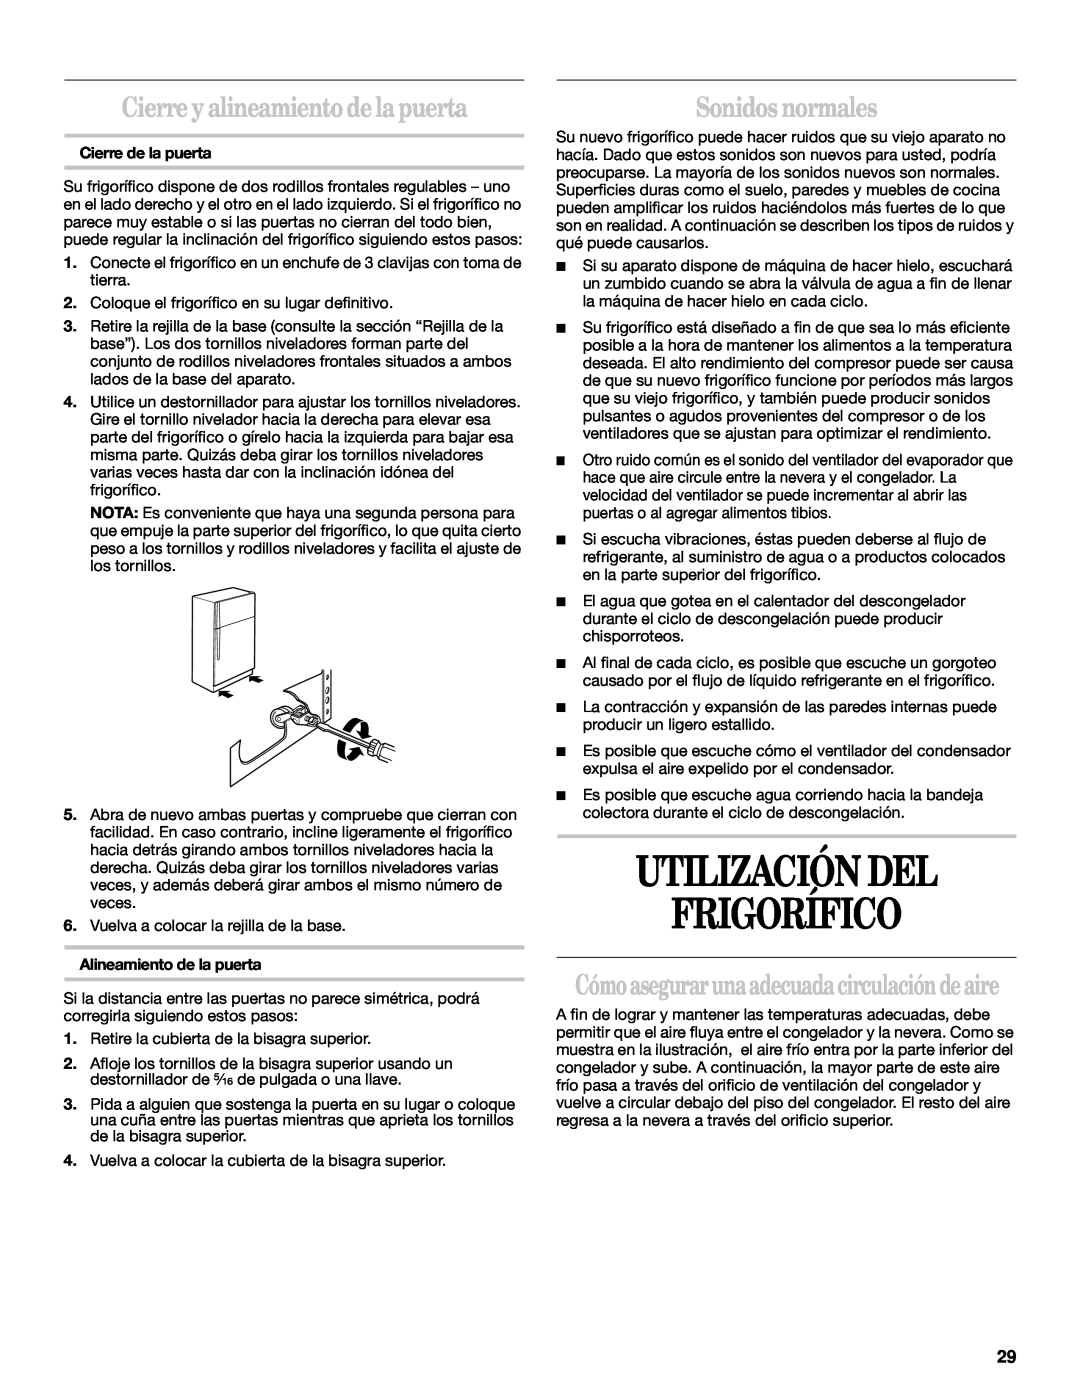 Whirlpool 2218585 manual Utilización Del Frigorífico, Cierre y alineamiento de la puerta, Sonidos normales 